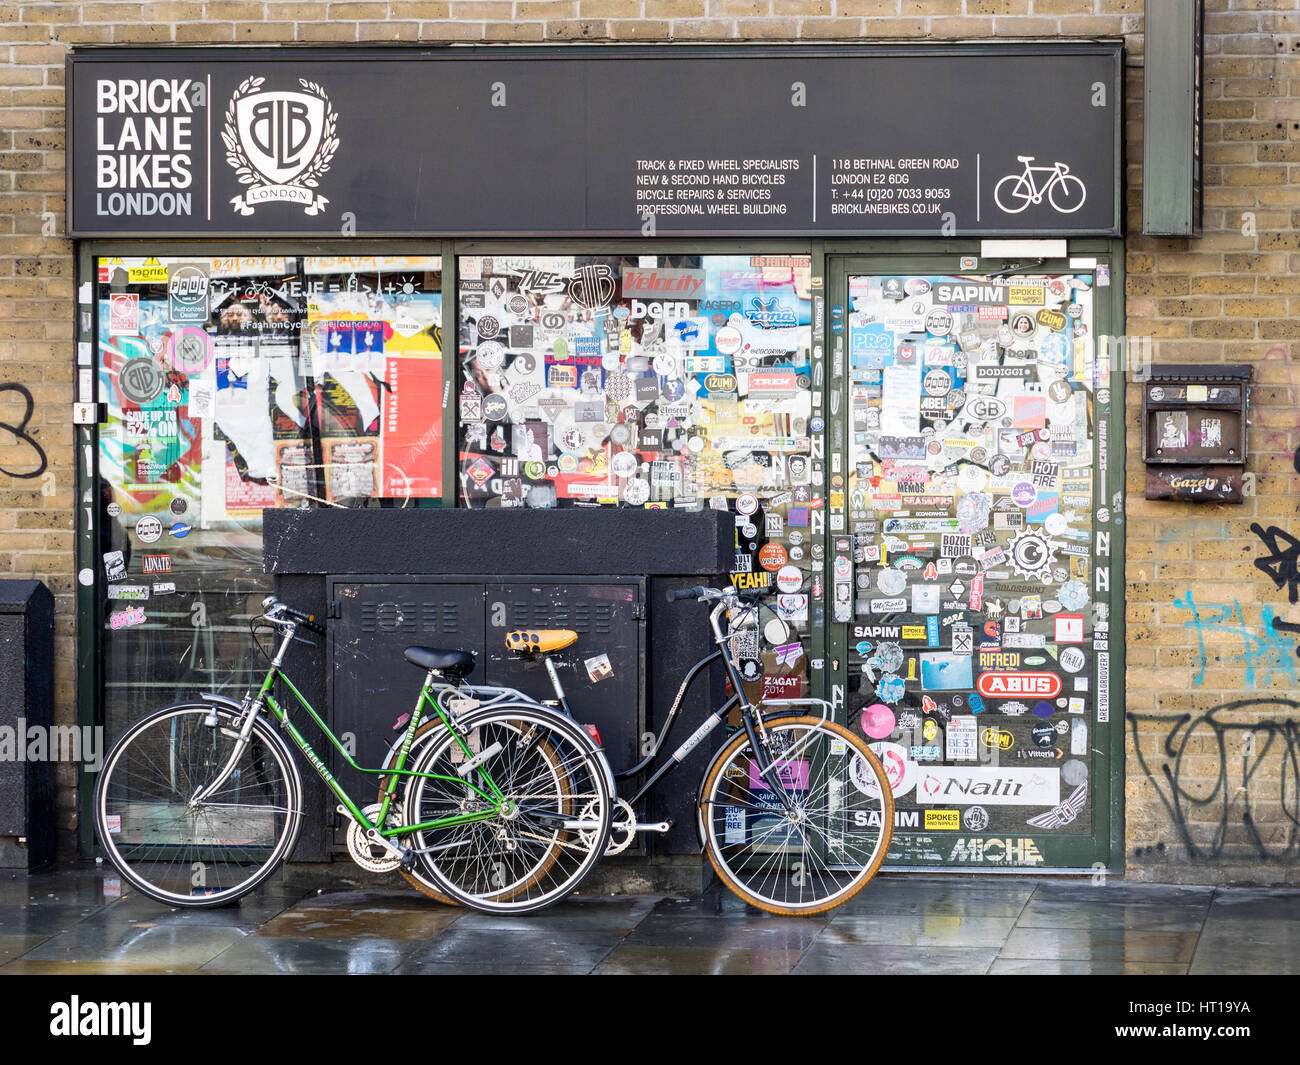 Brick Lane Bikes, von einem ehemaligen Zyklus Kurier in Londons Fasionable Shoreditch Bereich eingerichtet. Bekannt für seinen Fokus auf Fixie und Singlespeed bikes Stockfoto